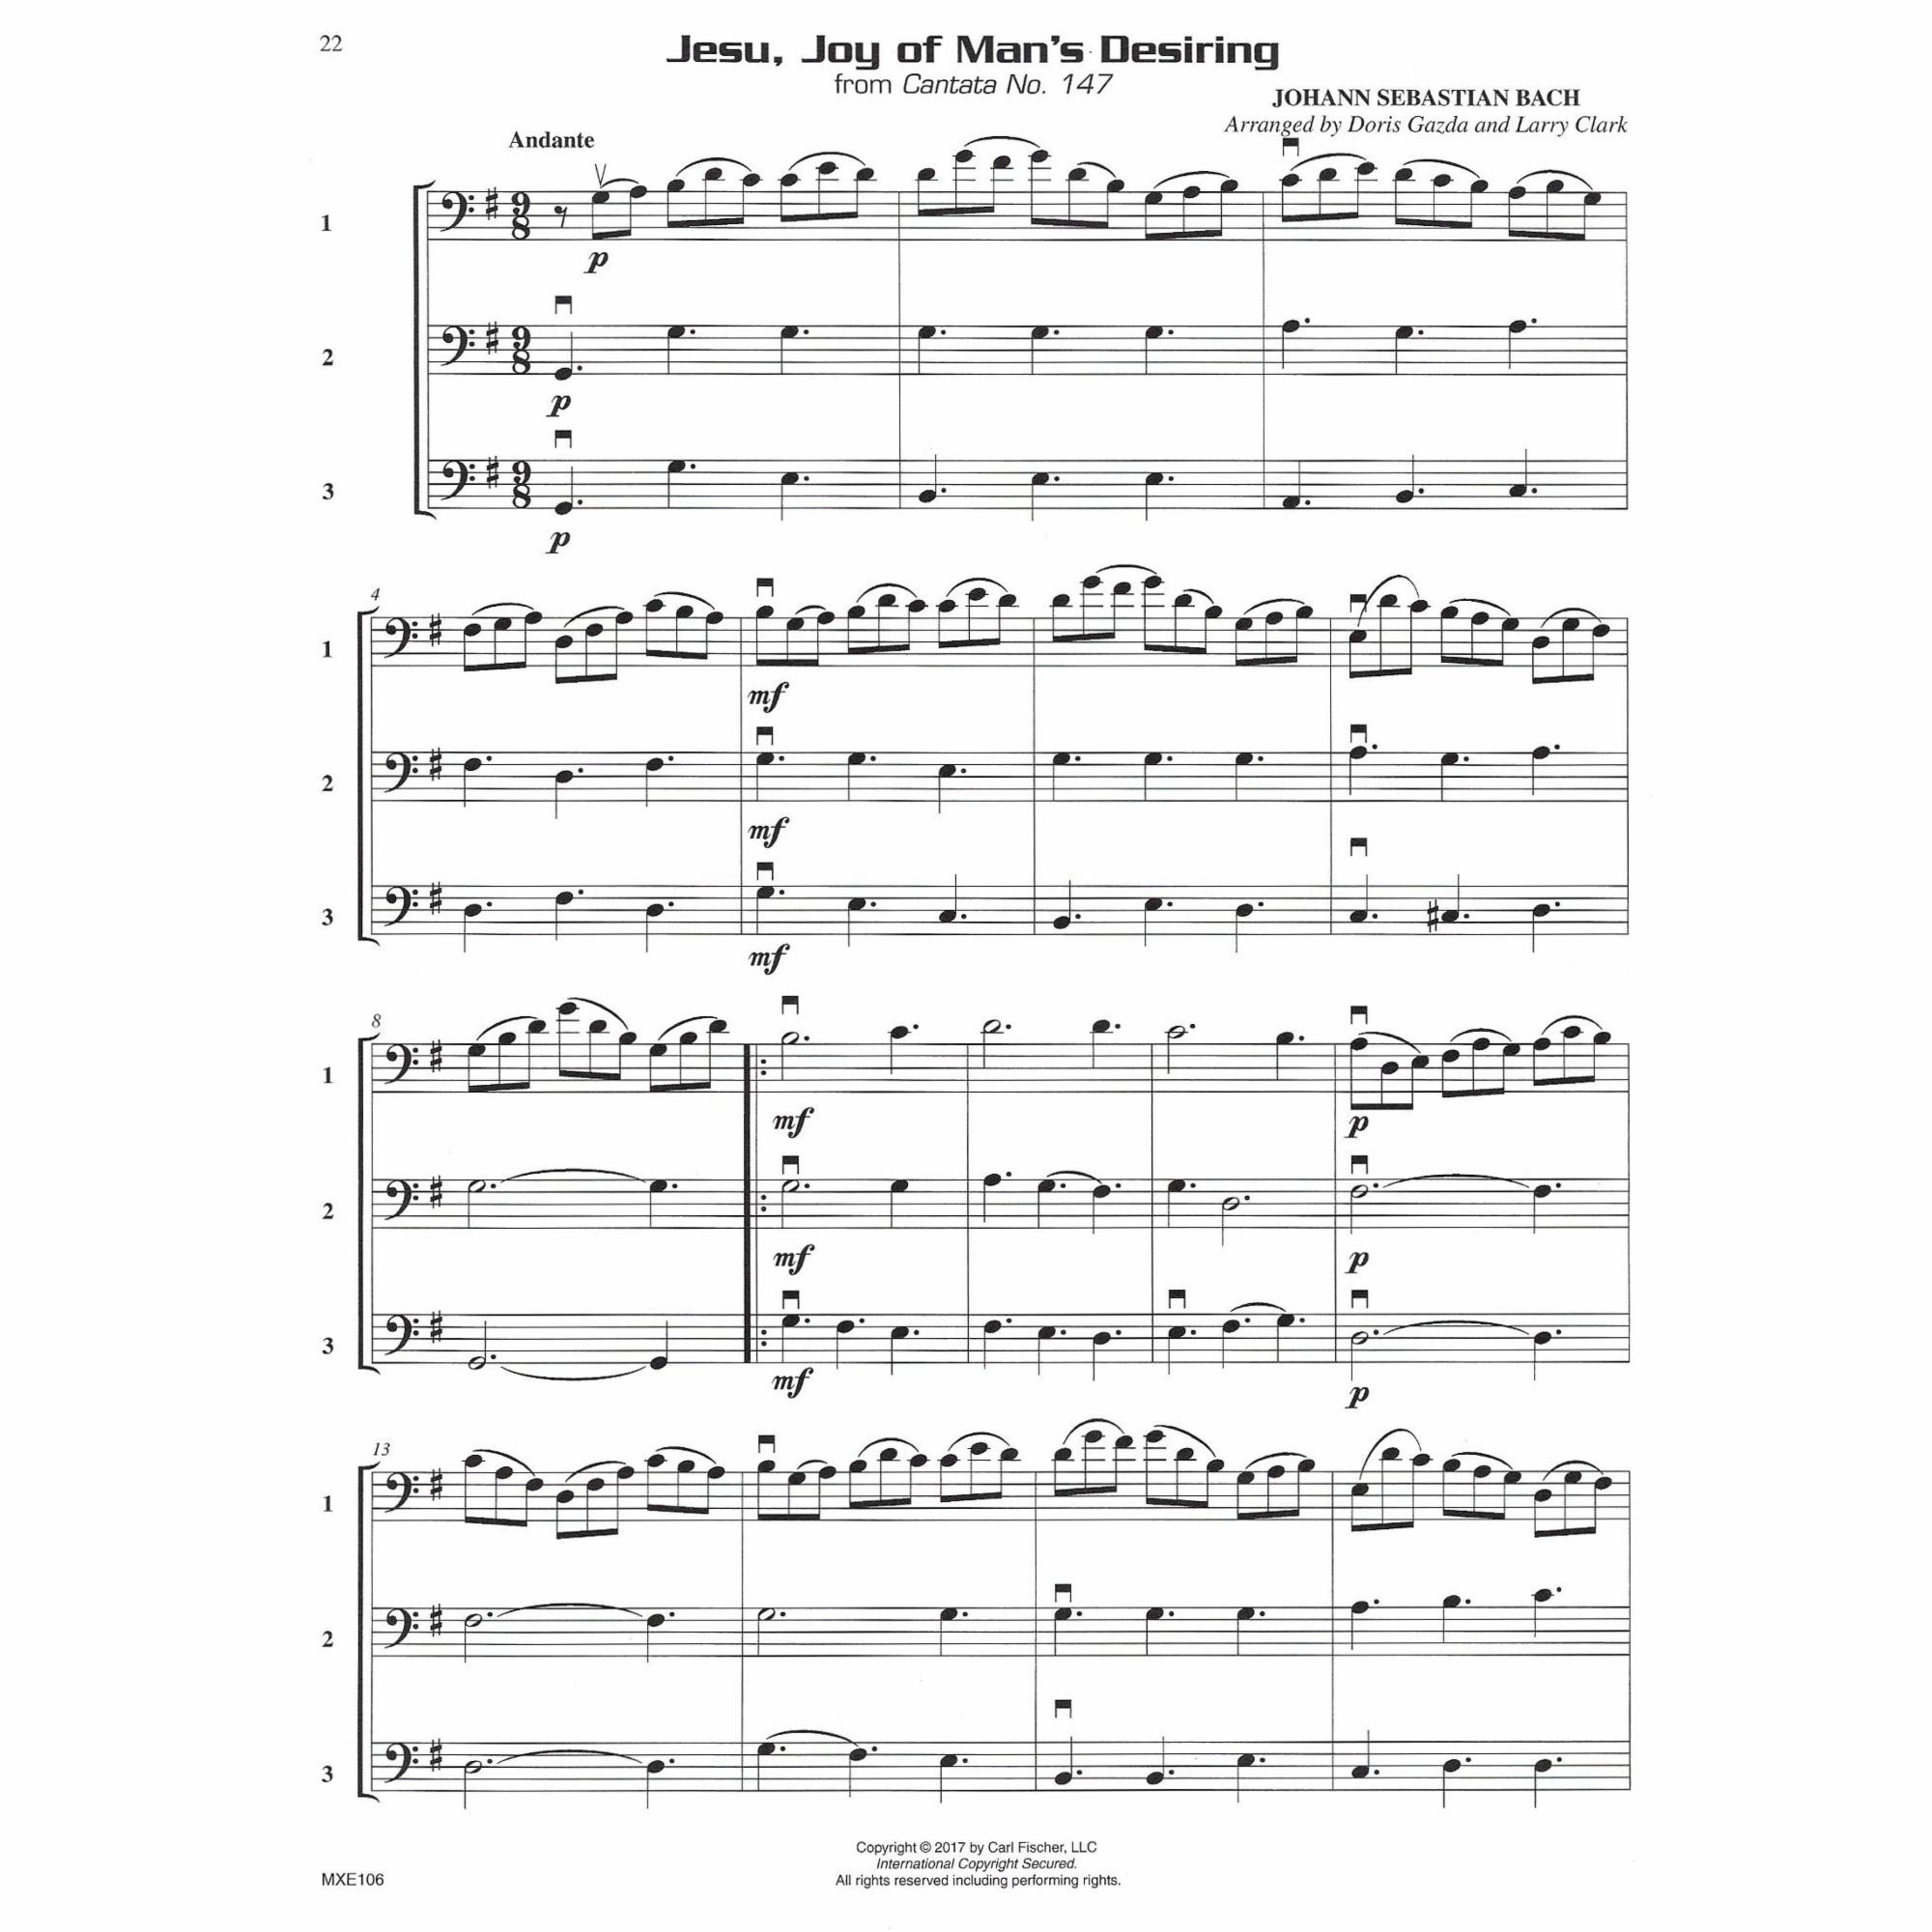 Sample: Cello (Pg. 22)